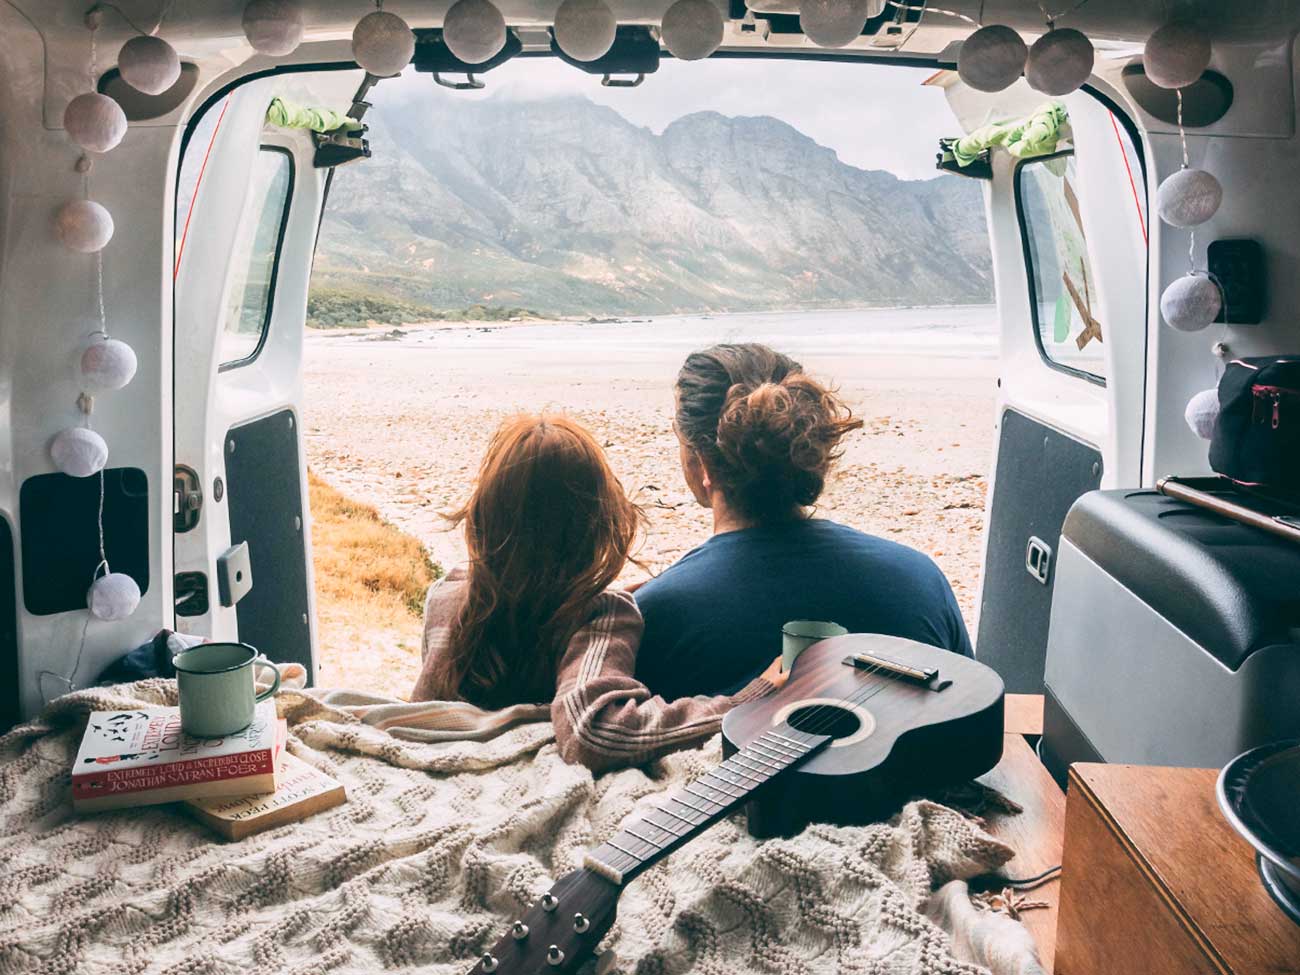 a couple lounging in their van-looking campervan 